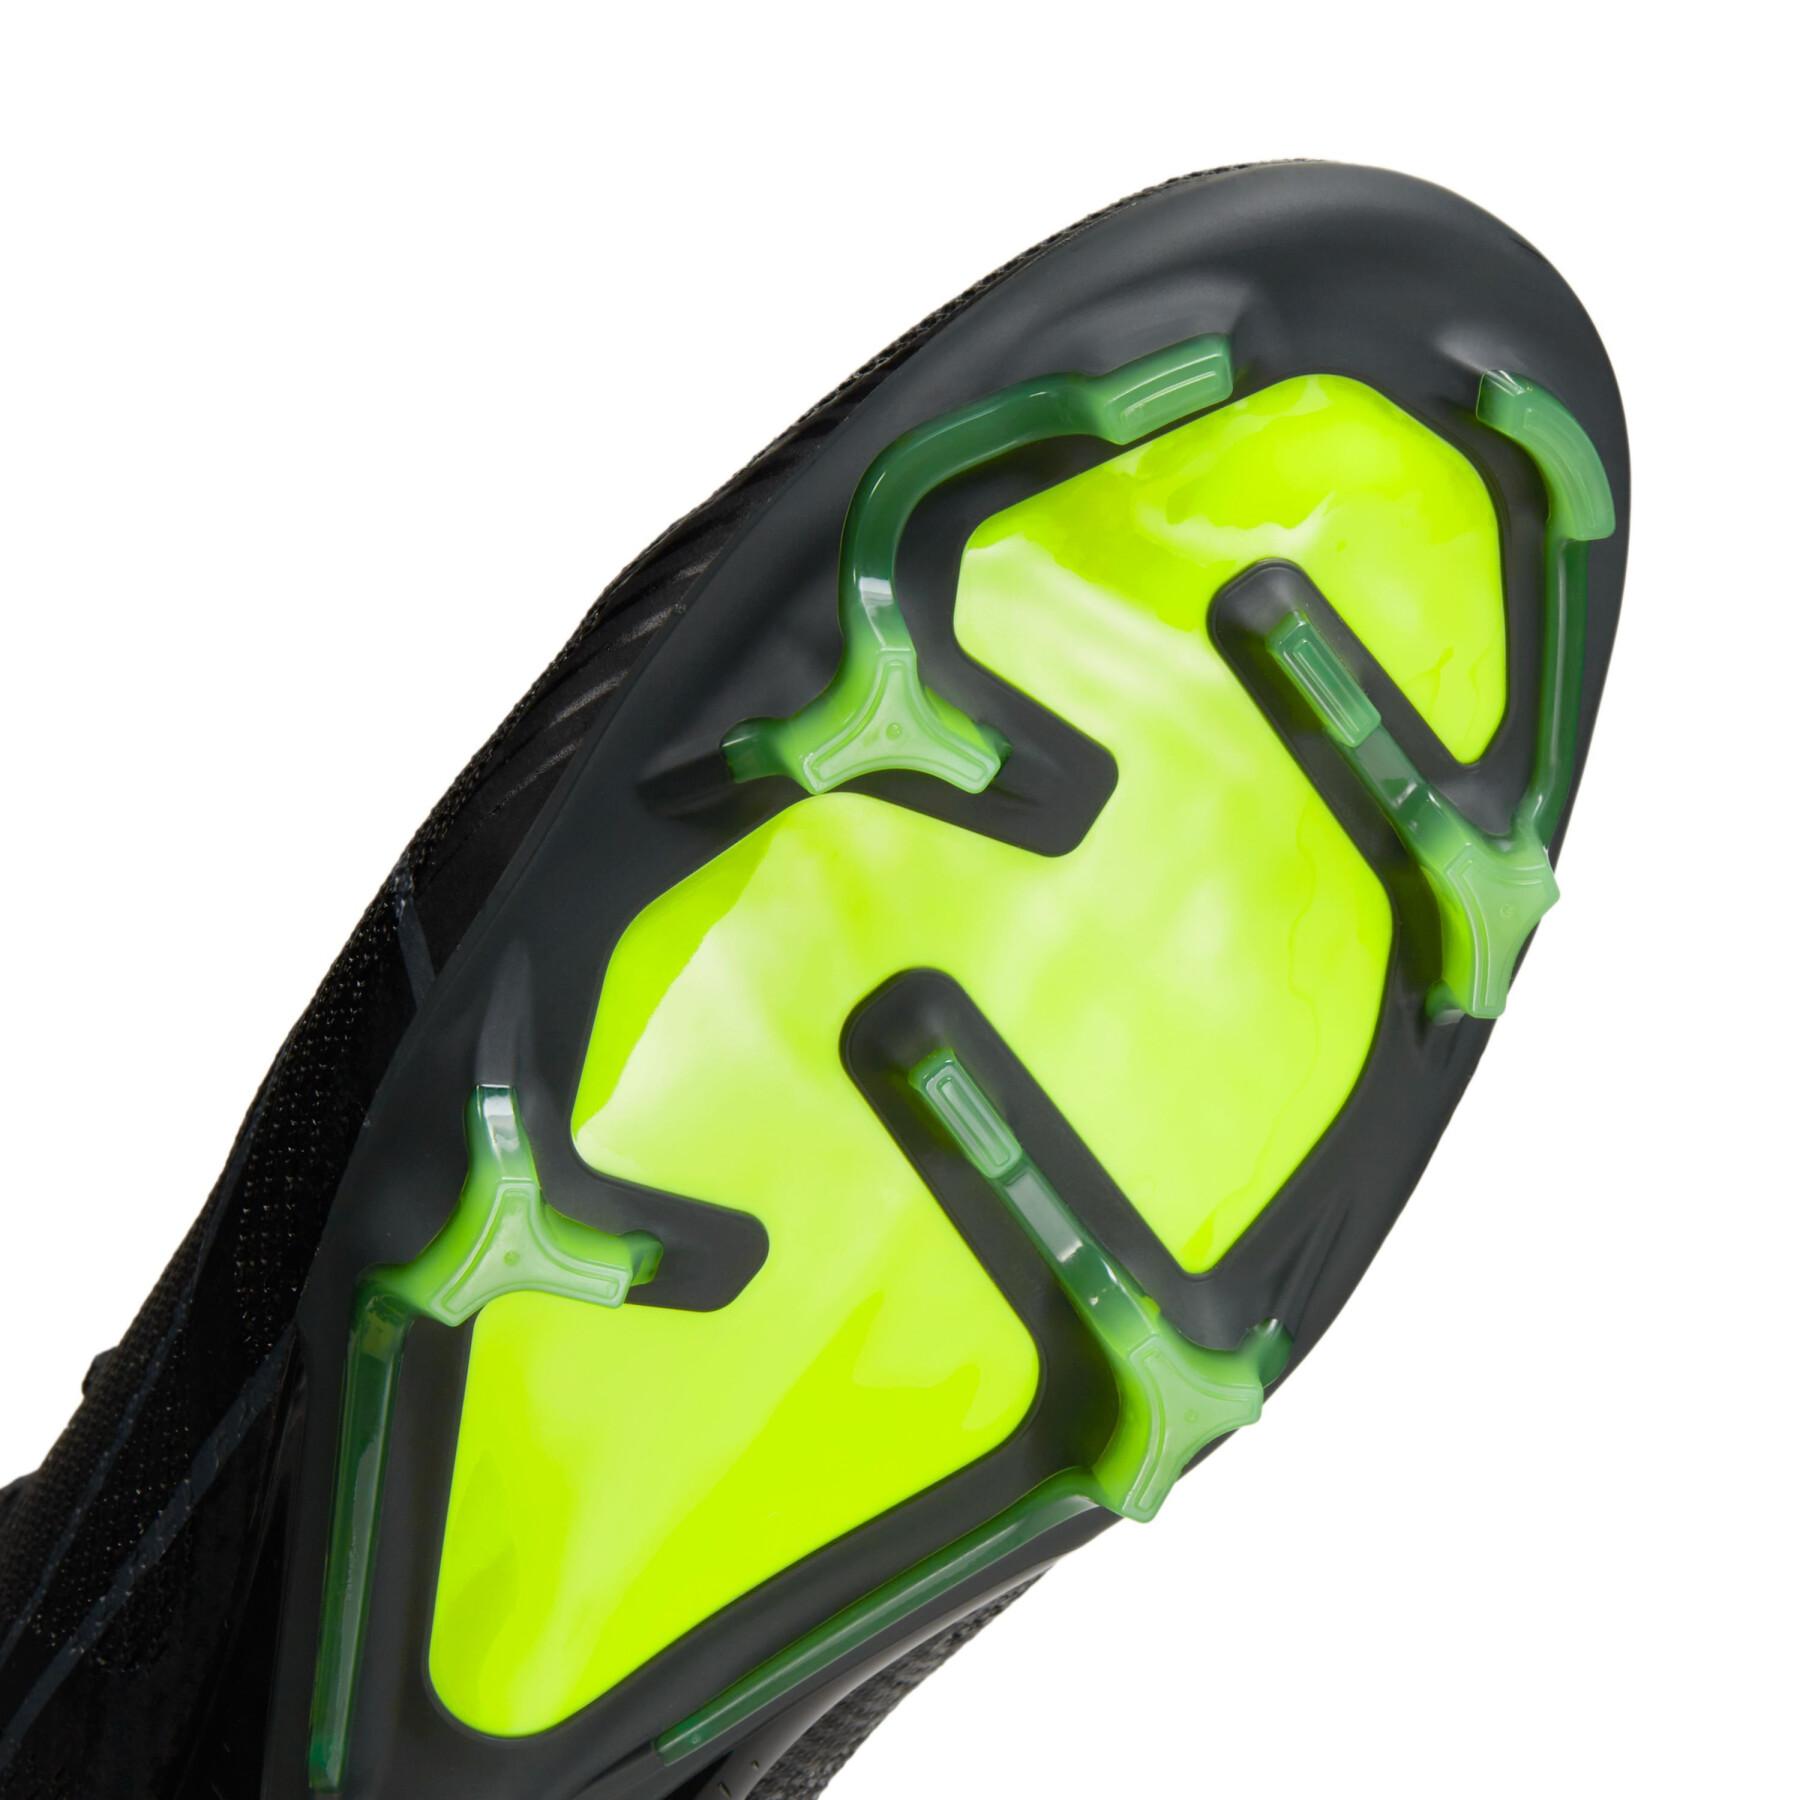 Buty piłkarskie Nike Zoom Mercurial Superfly 9 Pro FG - Shadow Black Pack